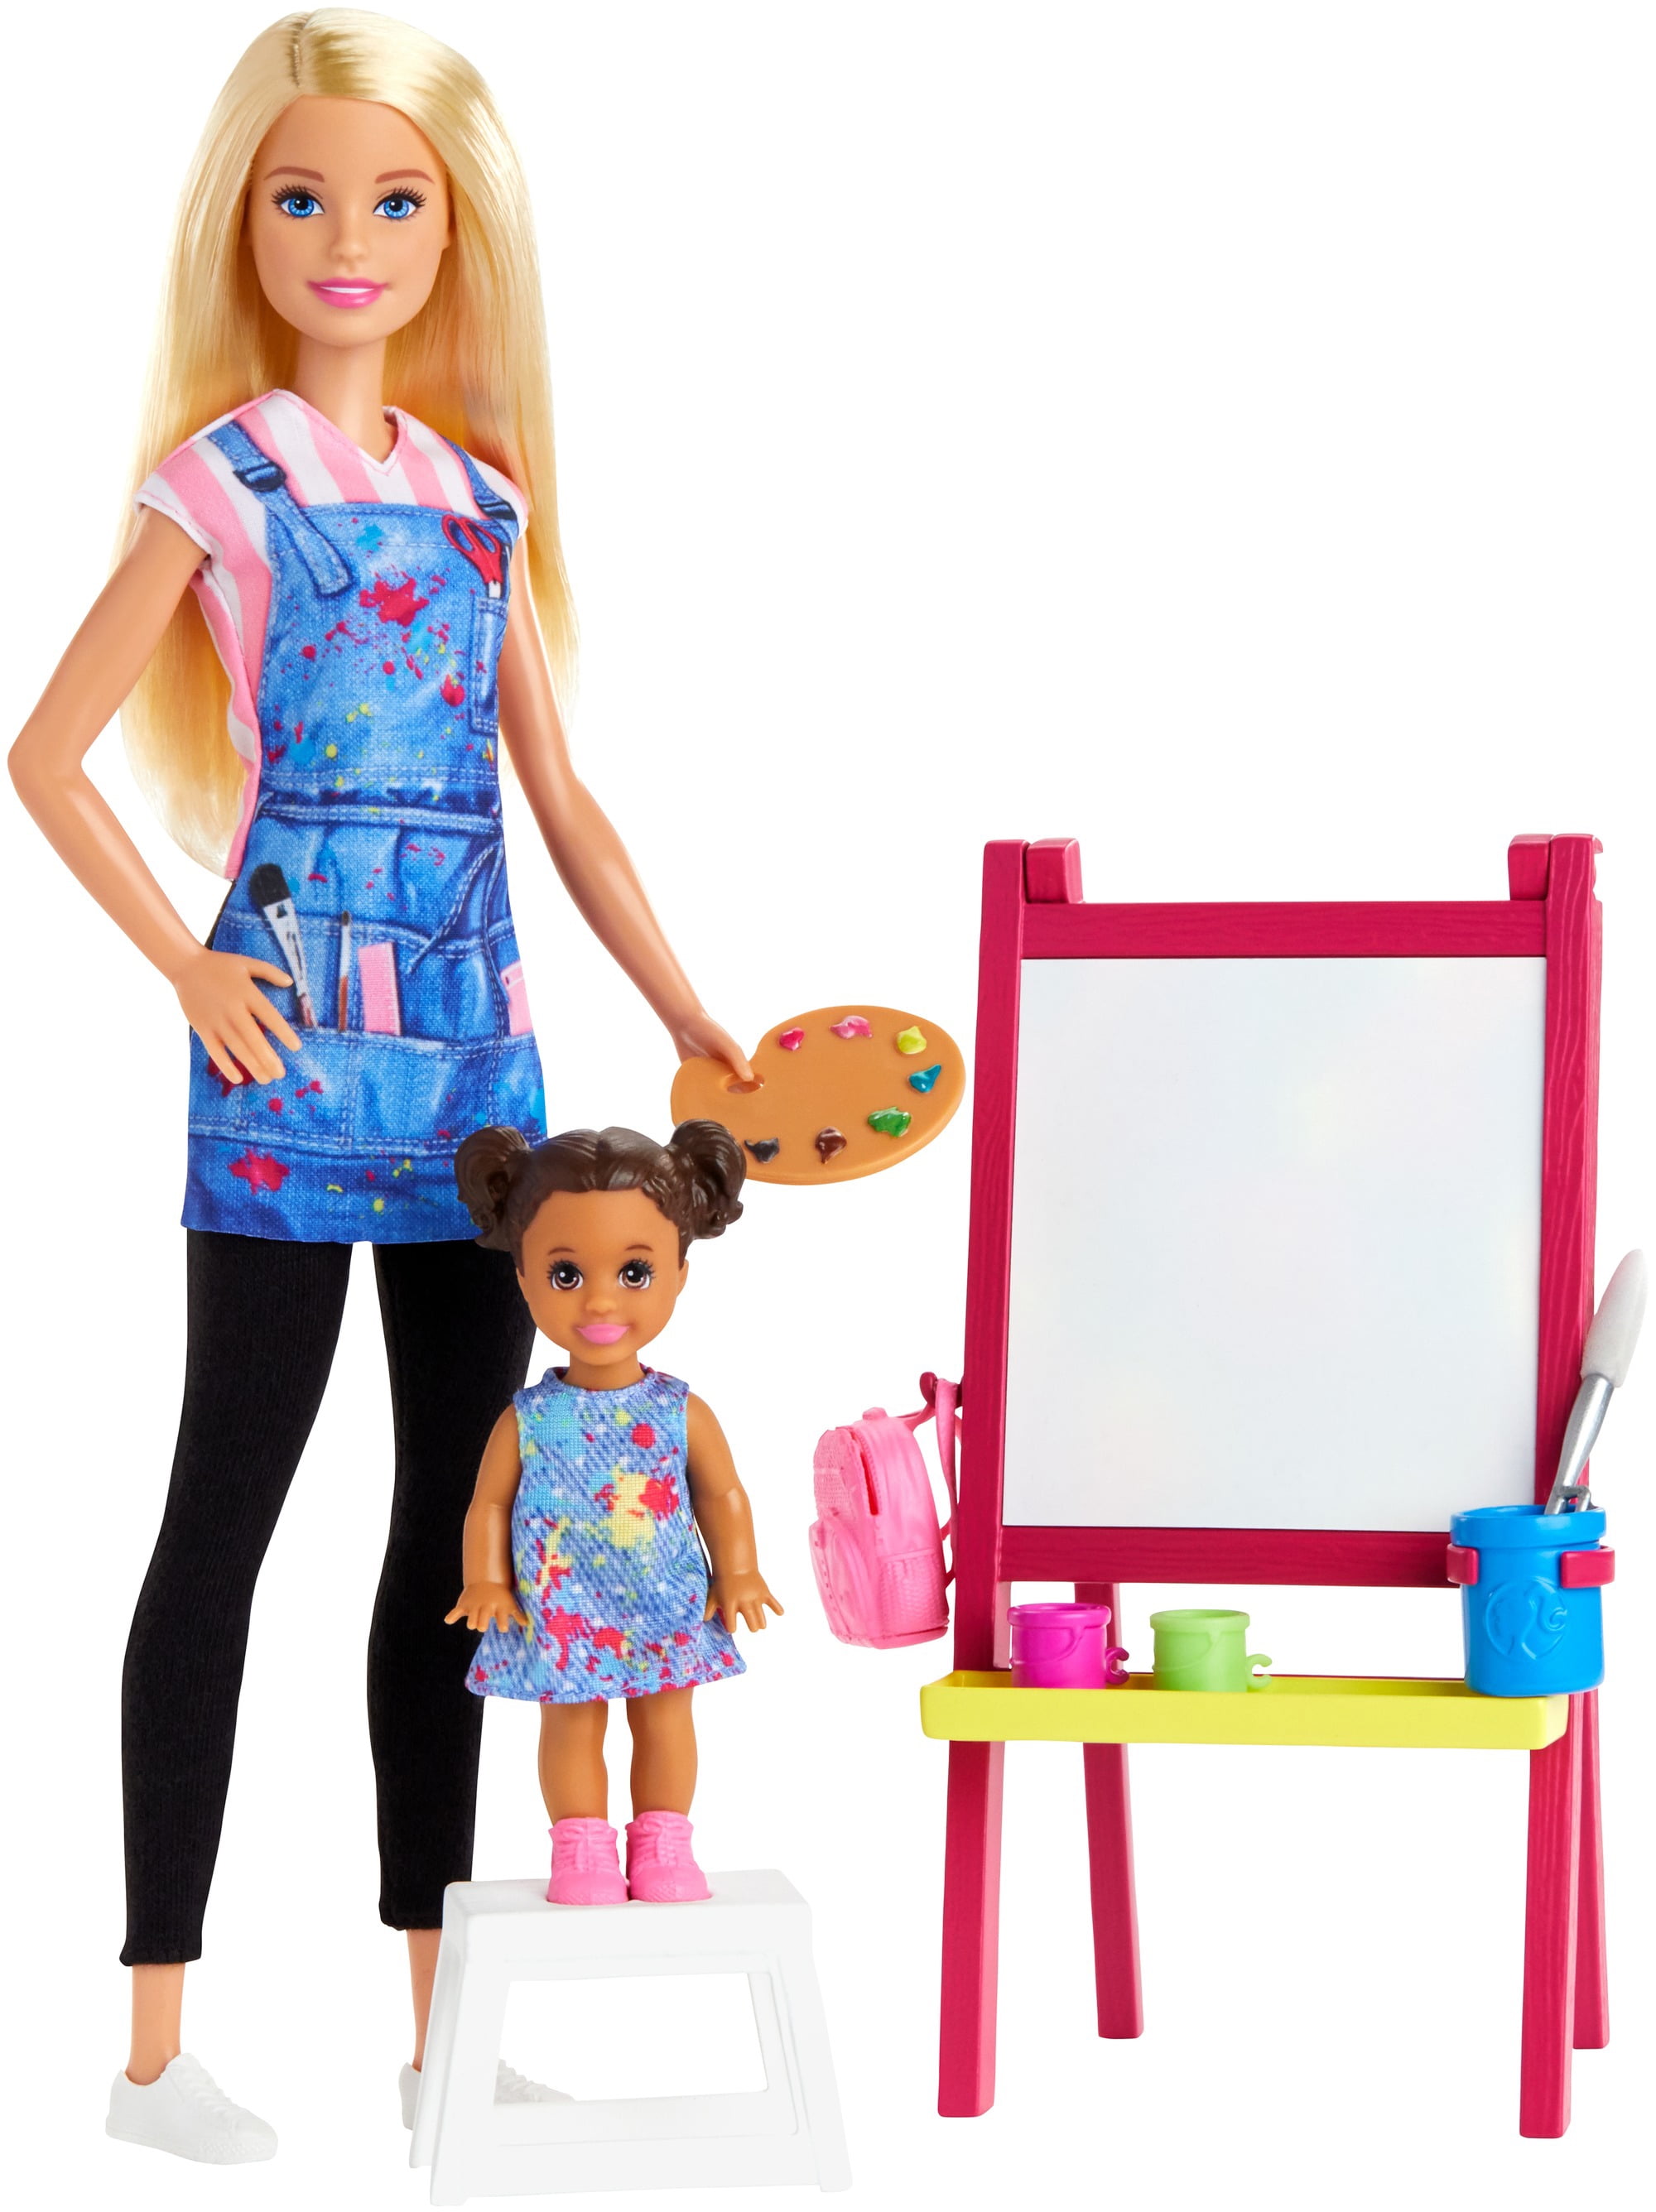 Barbie Career Mini Dolls Cake Topper 2019 Mattel for sale online 